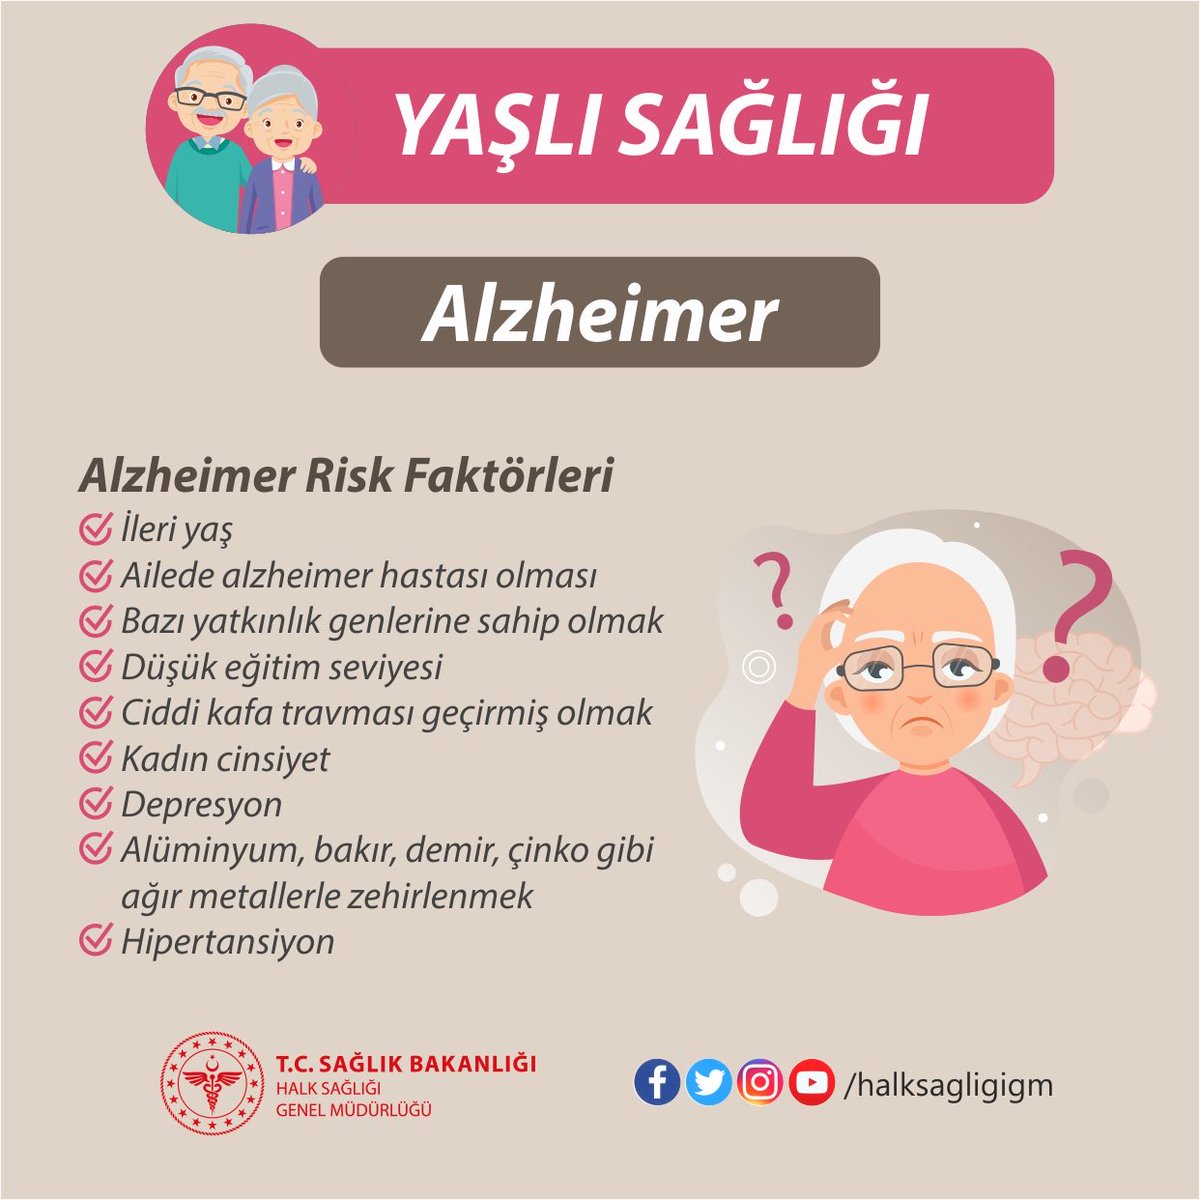 Alzheimer, yaşlılıkla beraber ortaya çıkan ve başta unutkanlık olmak üzere; çeşitli zihinsel ve davranışsal bozukluklara yol açan, günlük yaşam aktivitelerini etkileyen ilerleyici bir beyin hastalığıdır.
#YaşlıSağlığı
#Alzheimer